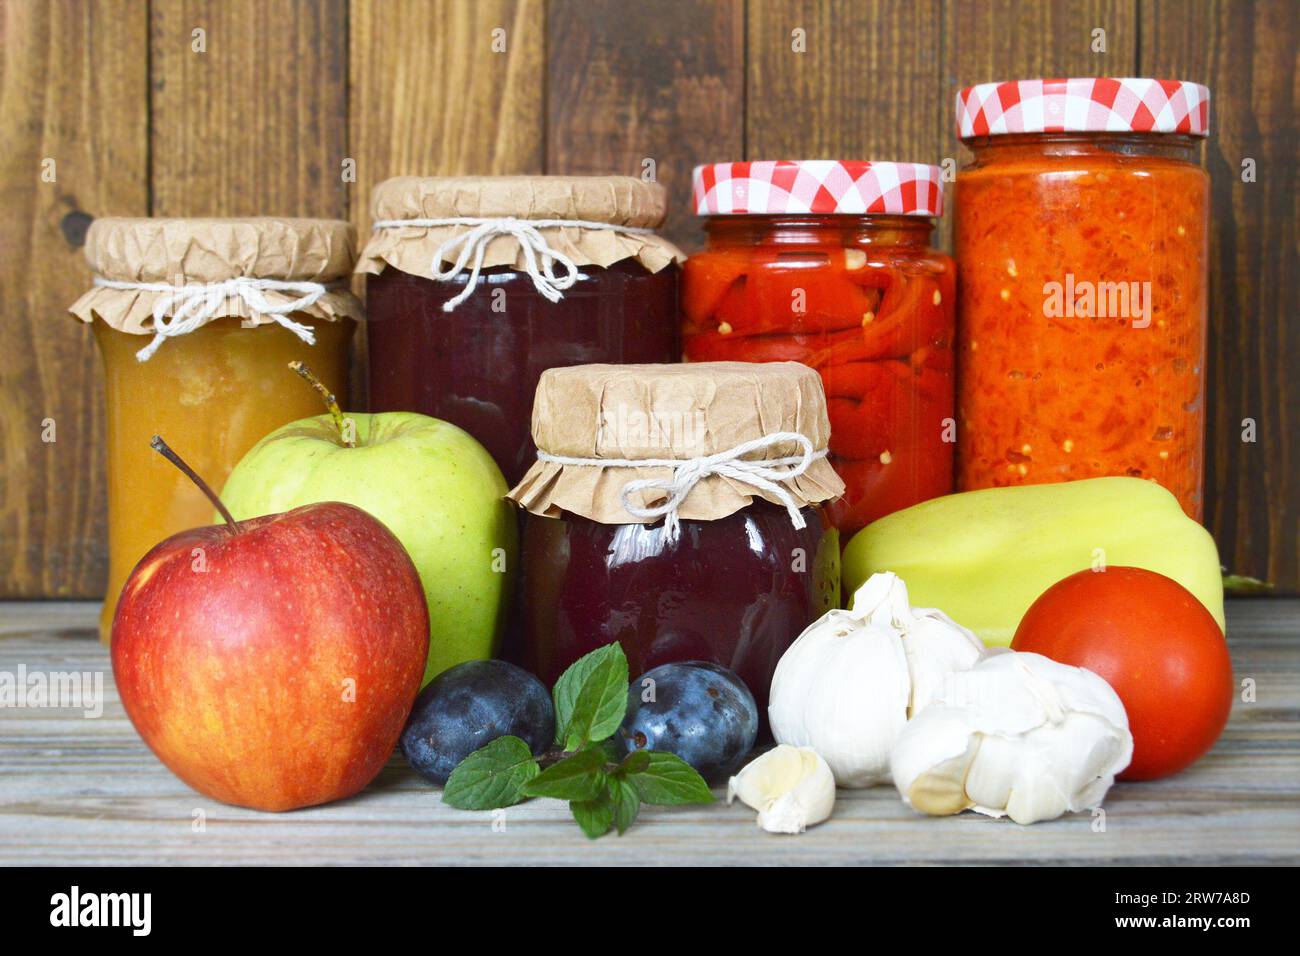 Frutta e verdura conservate e fresche su fondo di legno. Conservare i cibi casalinghi. Foto Stock